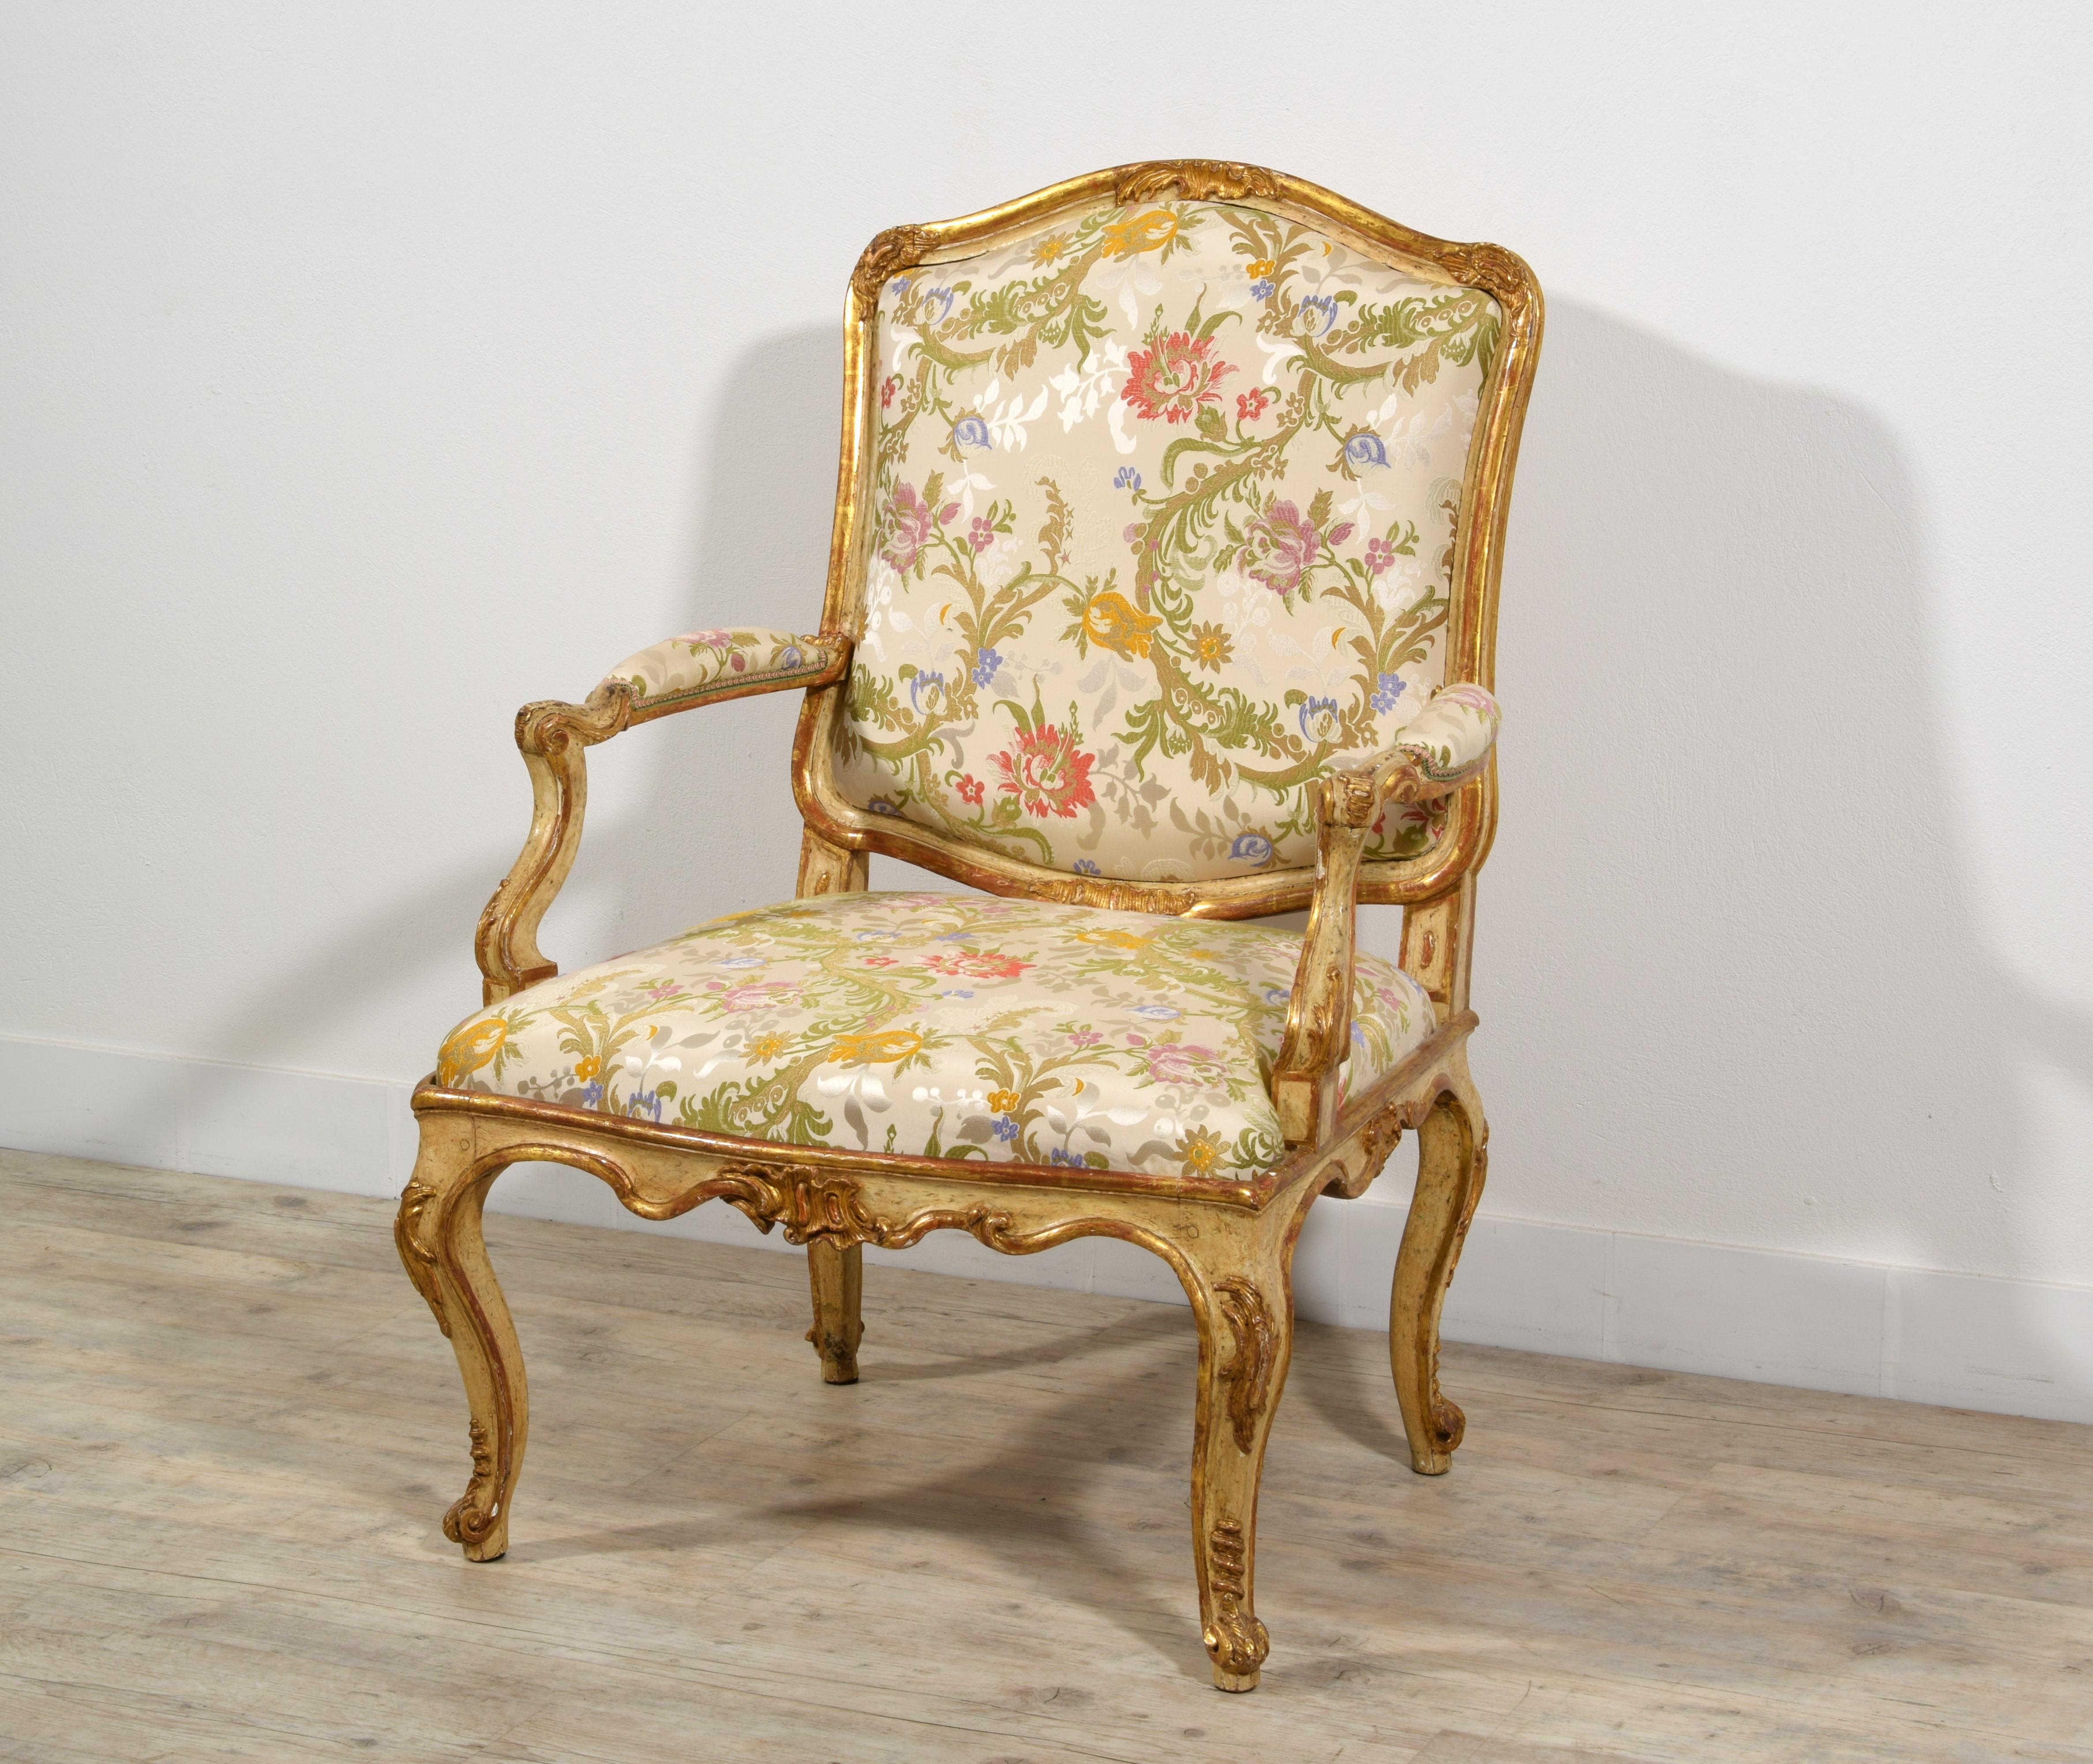 XVIIIe siècle, Fauteuils baroques italiens en bois doré et laqué 
Cet élégant fauteuil a été fabriqué à l'époque baroque à Turin, vers le milieu du XVIIIe siècle. La structure du fauteuil est en bois finement sculpté, laqué en ivoire et doré. 
Le